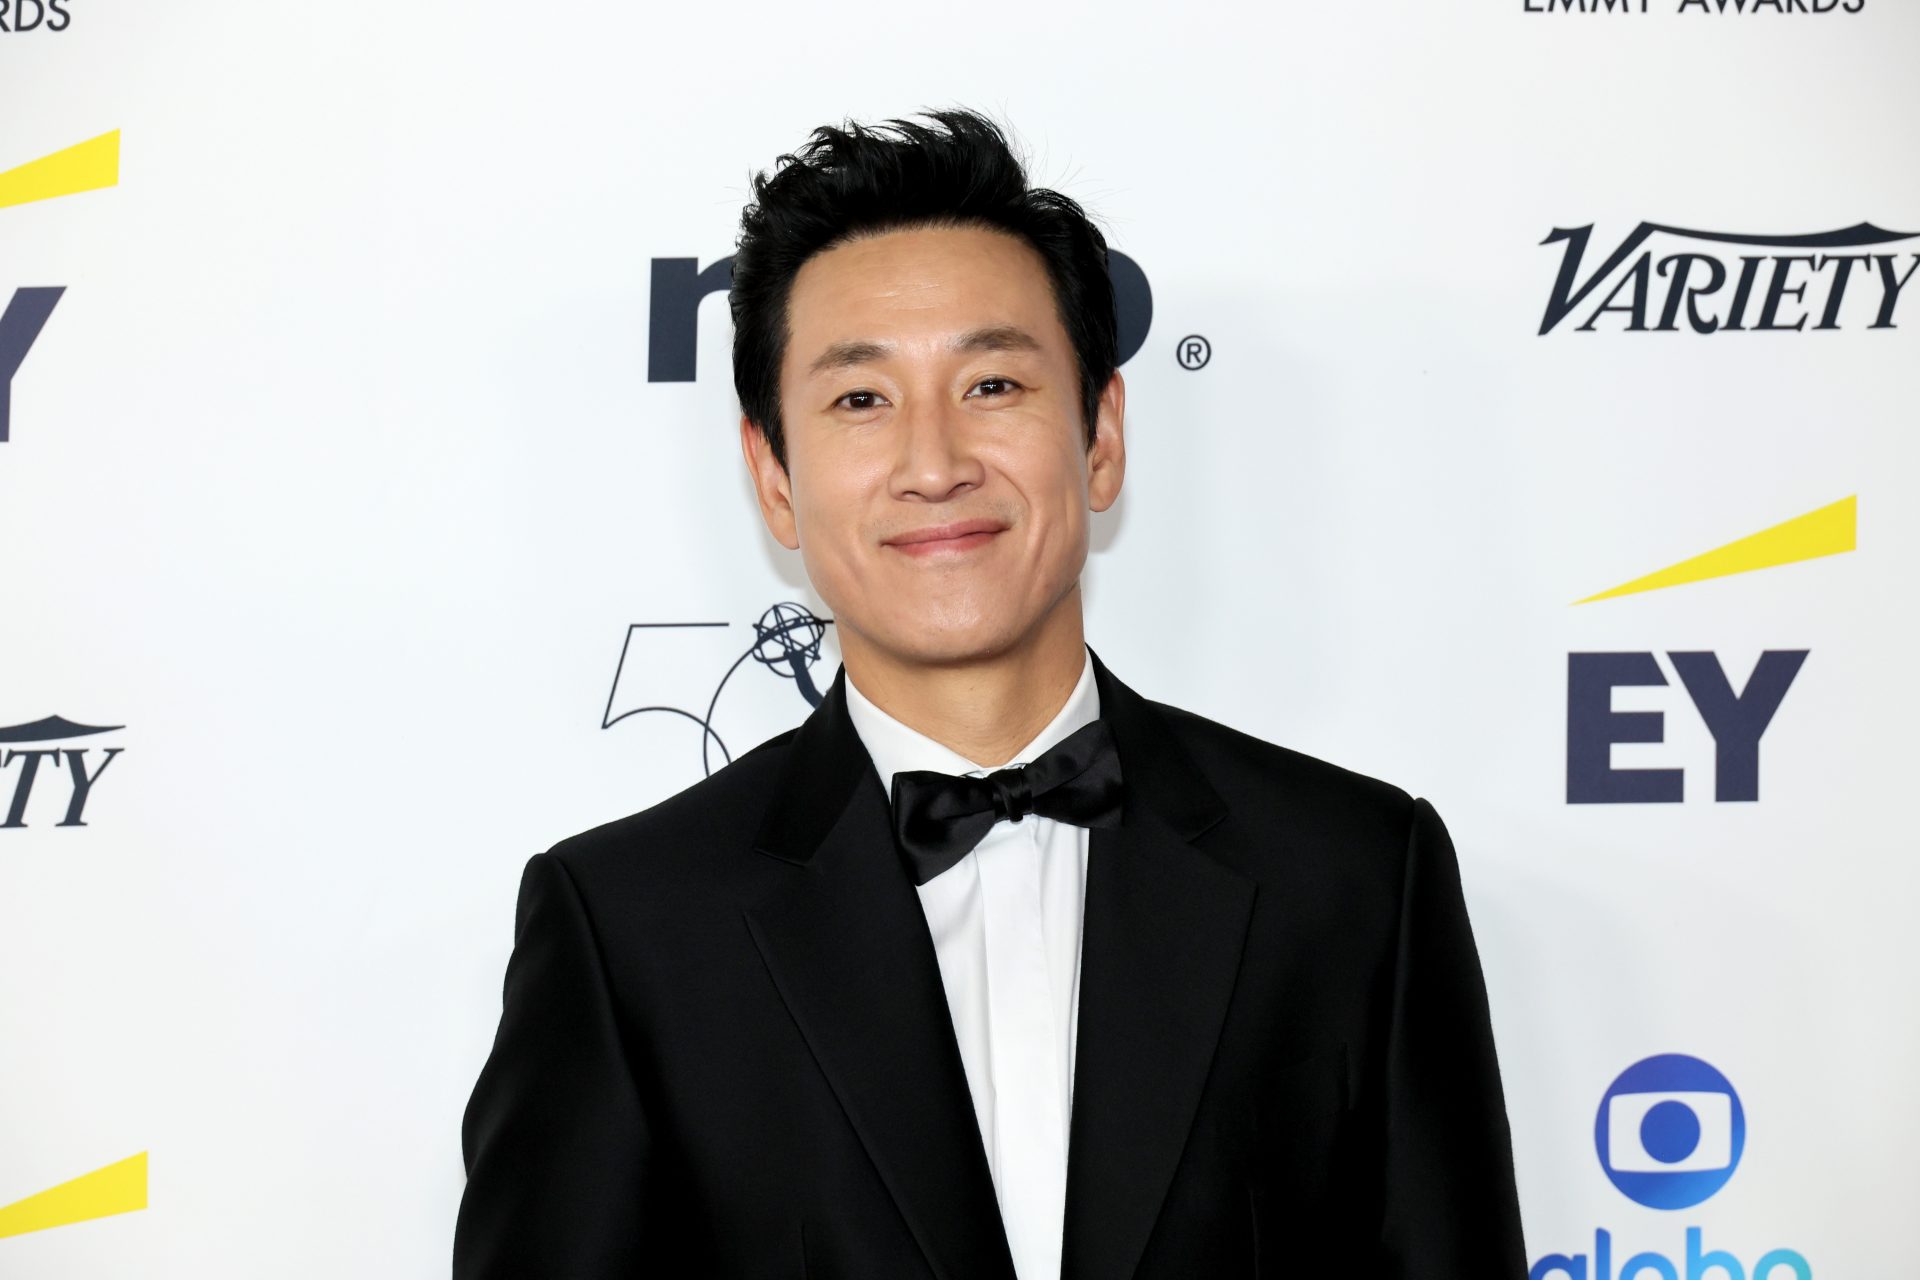 Lee Sun-kyun, 'Parasite' actor with tragic history